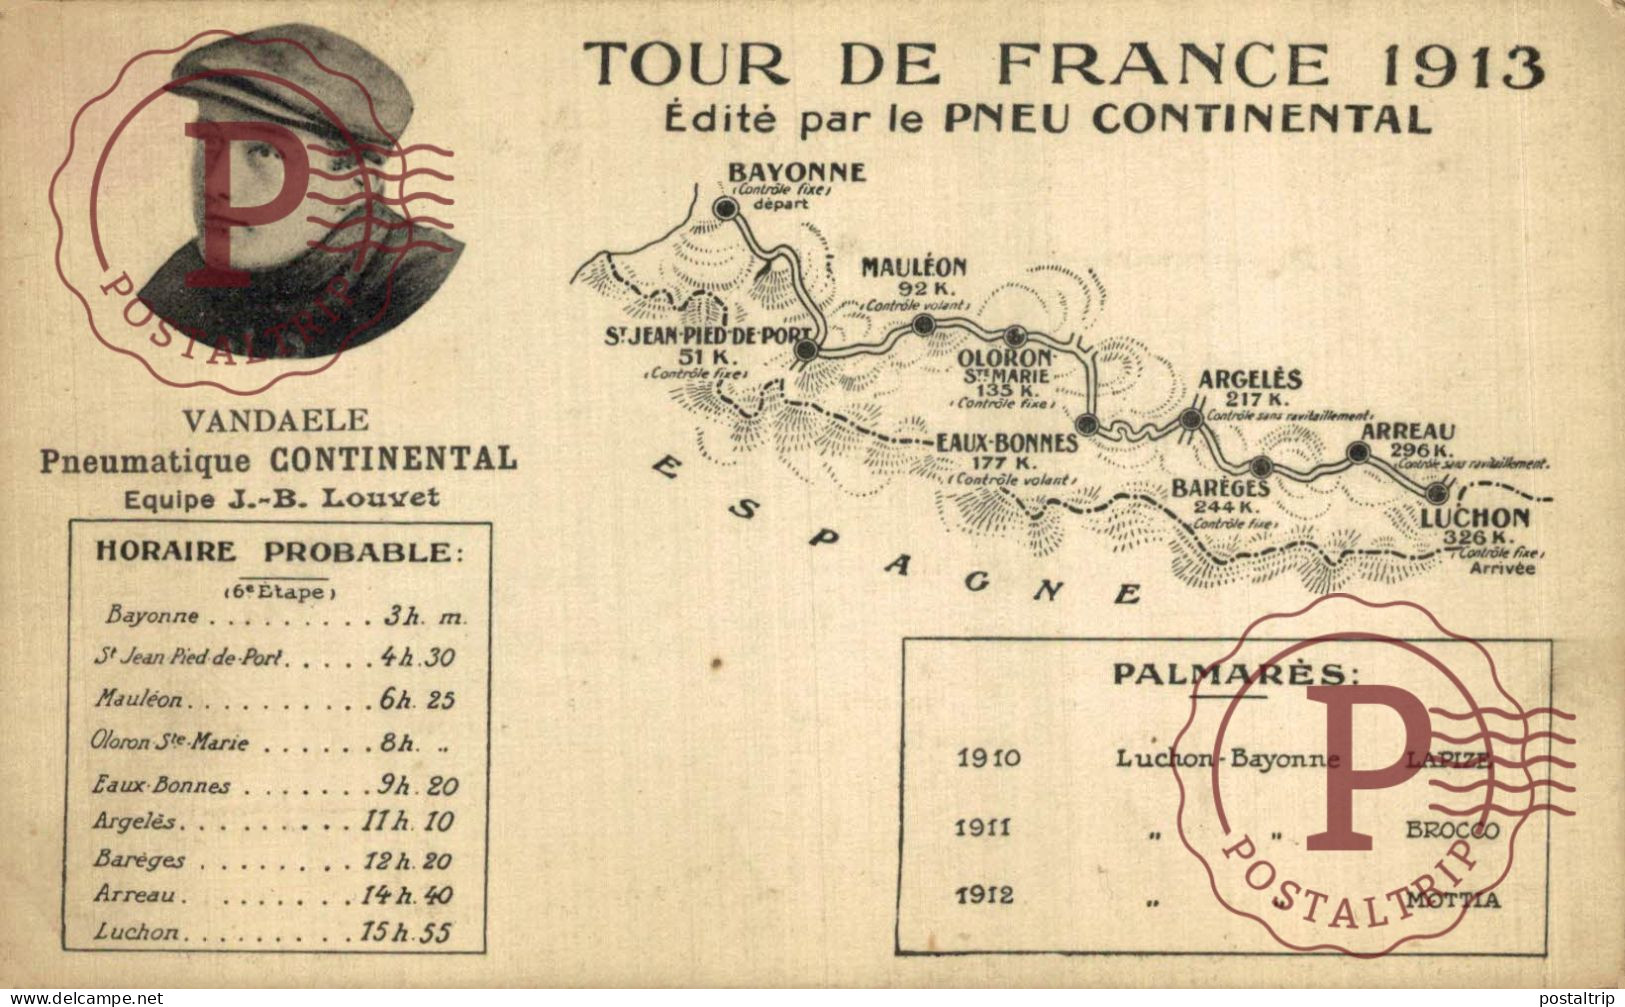 CICLISIMO. CYCLING. VELO. CYCLISME. TOUR DE FRANCE 1913. Pneu Continental Vandaele - équipe J.B - Cycling